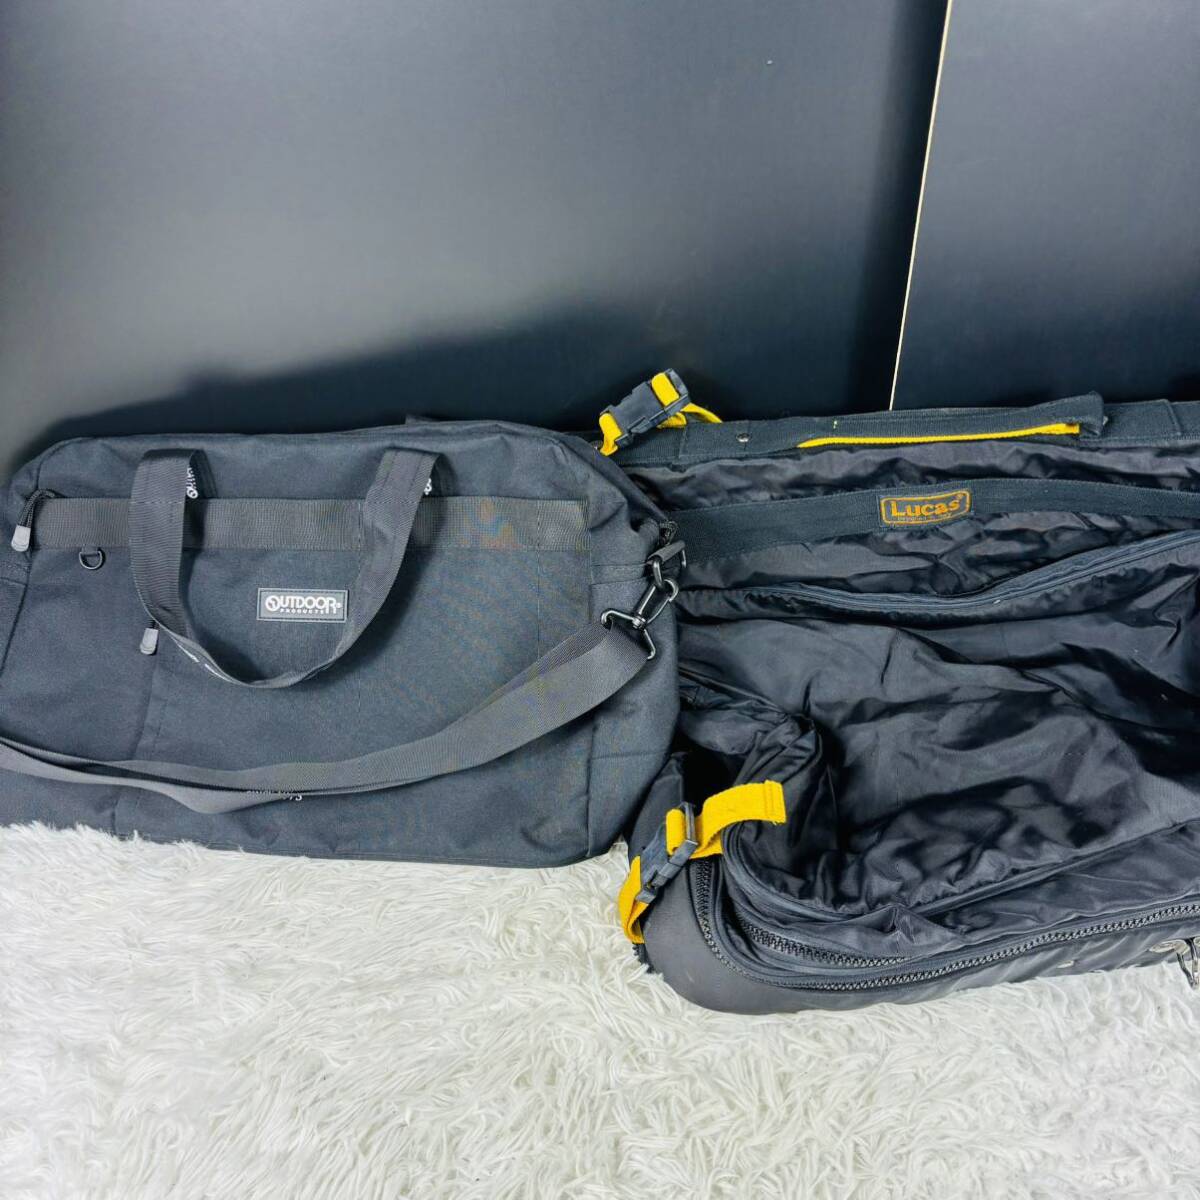  сумка суммировать комплект 7 пункт DIESEL Tommy Hilfiger уличный LUCAS North Face REGAL SHOES SAZABY сумка "Boston bag" рюкзак и т.п. 